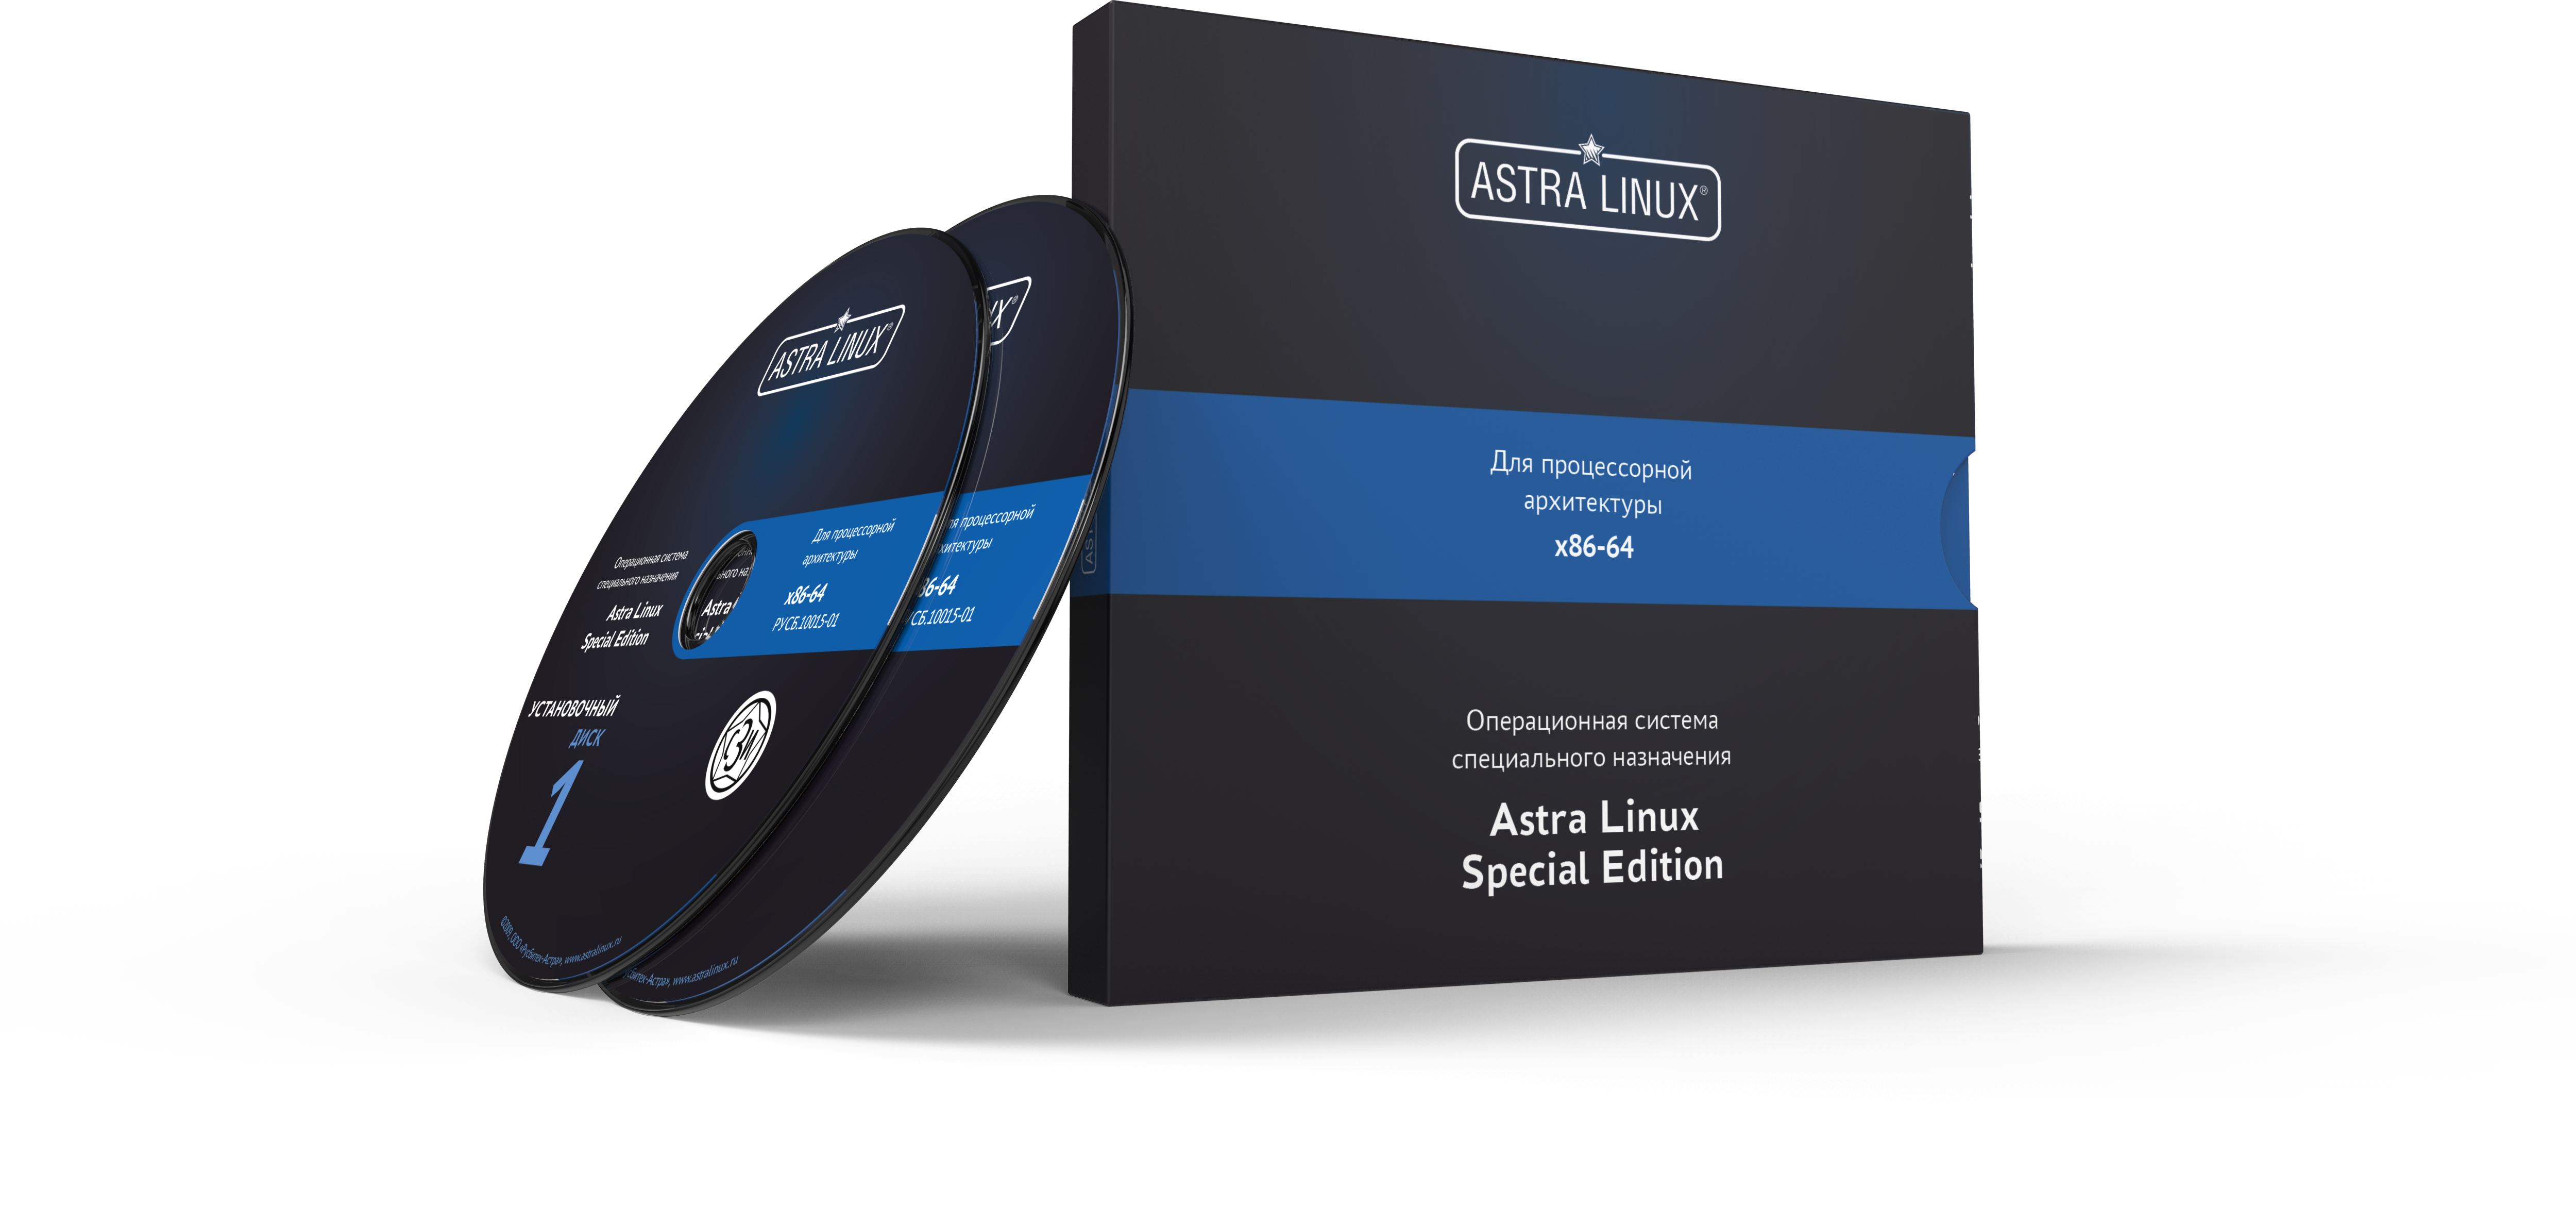 Astra Linux Special Edition 1.7 - Воронеж, для рабочей станции, электронный, "Усиленный", без огр. срока, ТП "Привилегированная" на 36 мес.